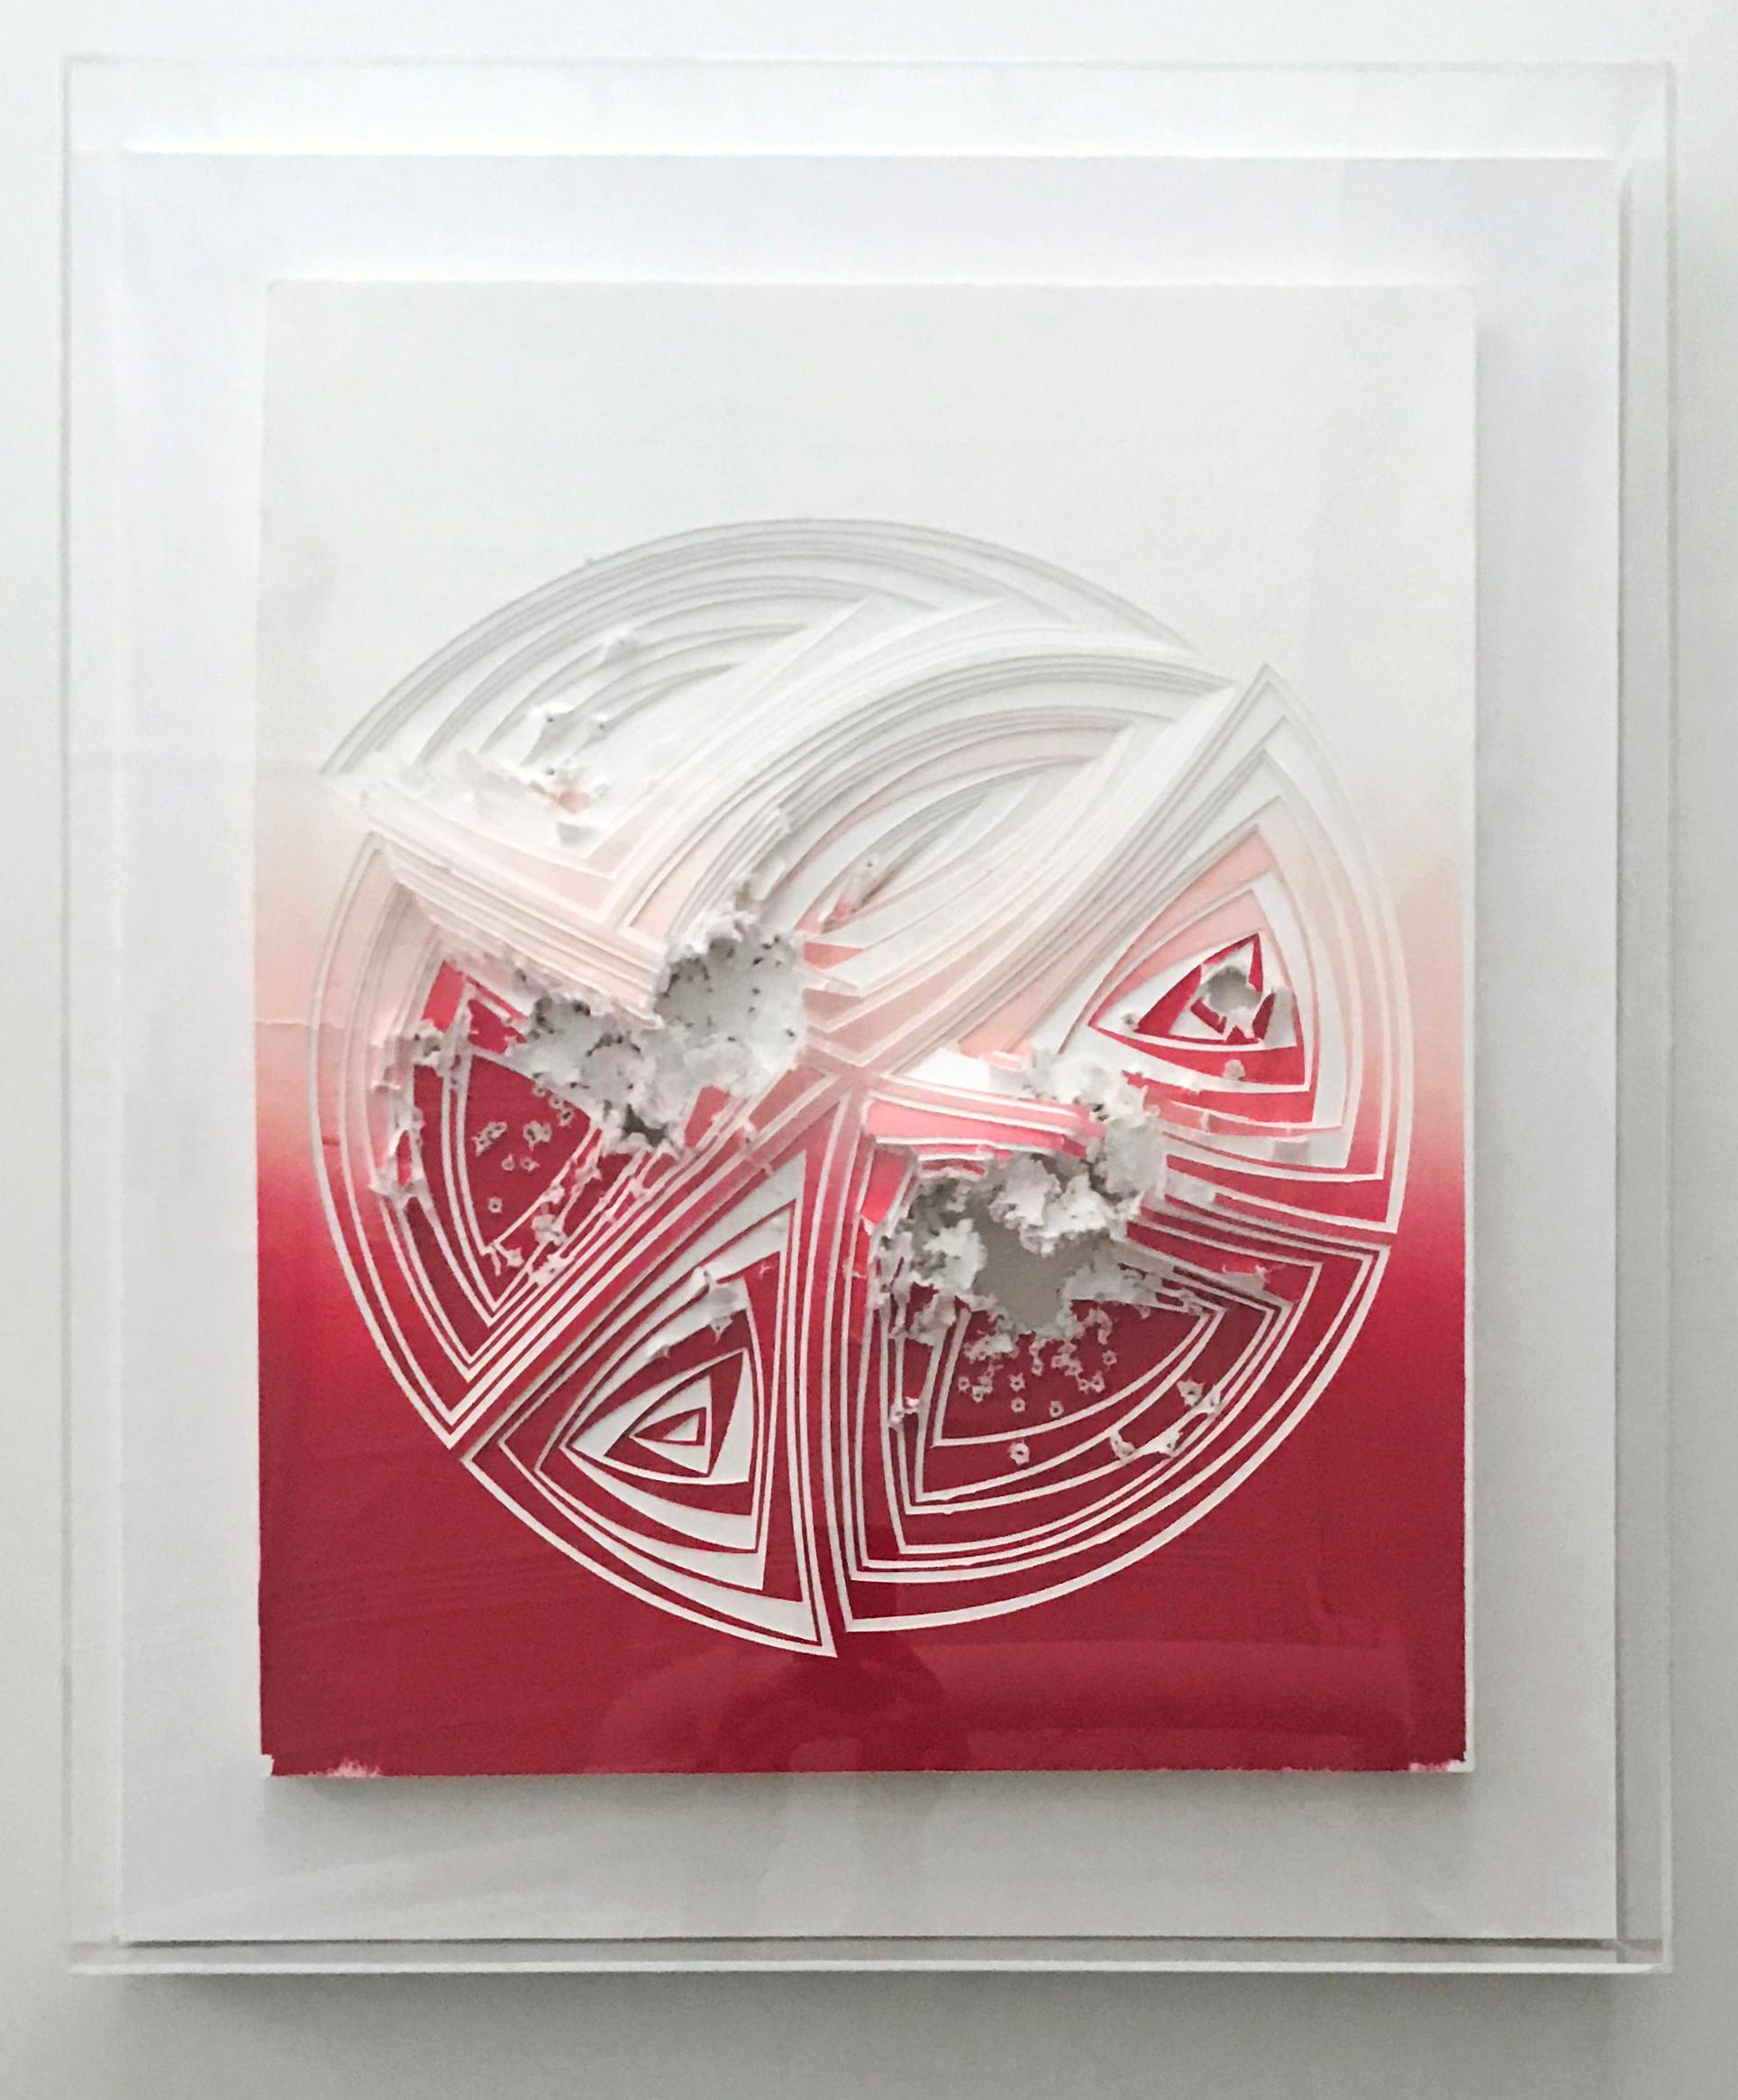 Freehand Cut mit Surgical Scalpel auf 2 Sperrholz-Museumbrett aus roter Mischung: Rotes Gunshot-In' (Abstrakt), Mixed Media Art, von Elizabeth Gregory-Gruen